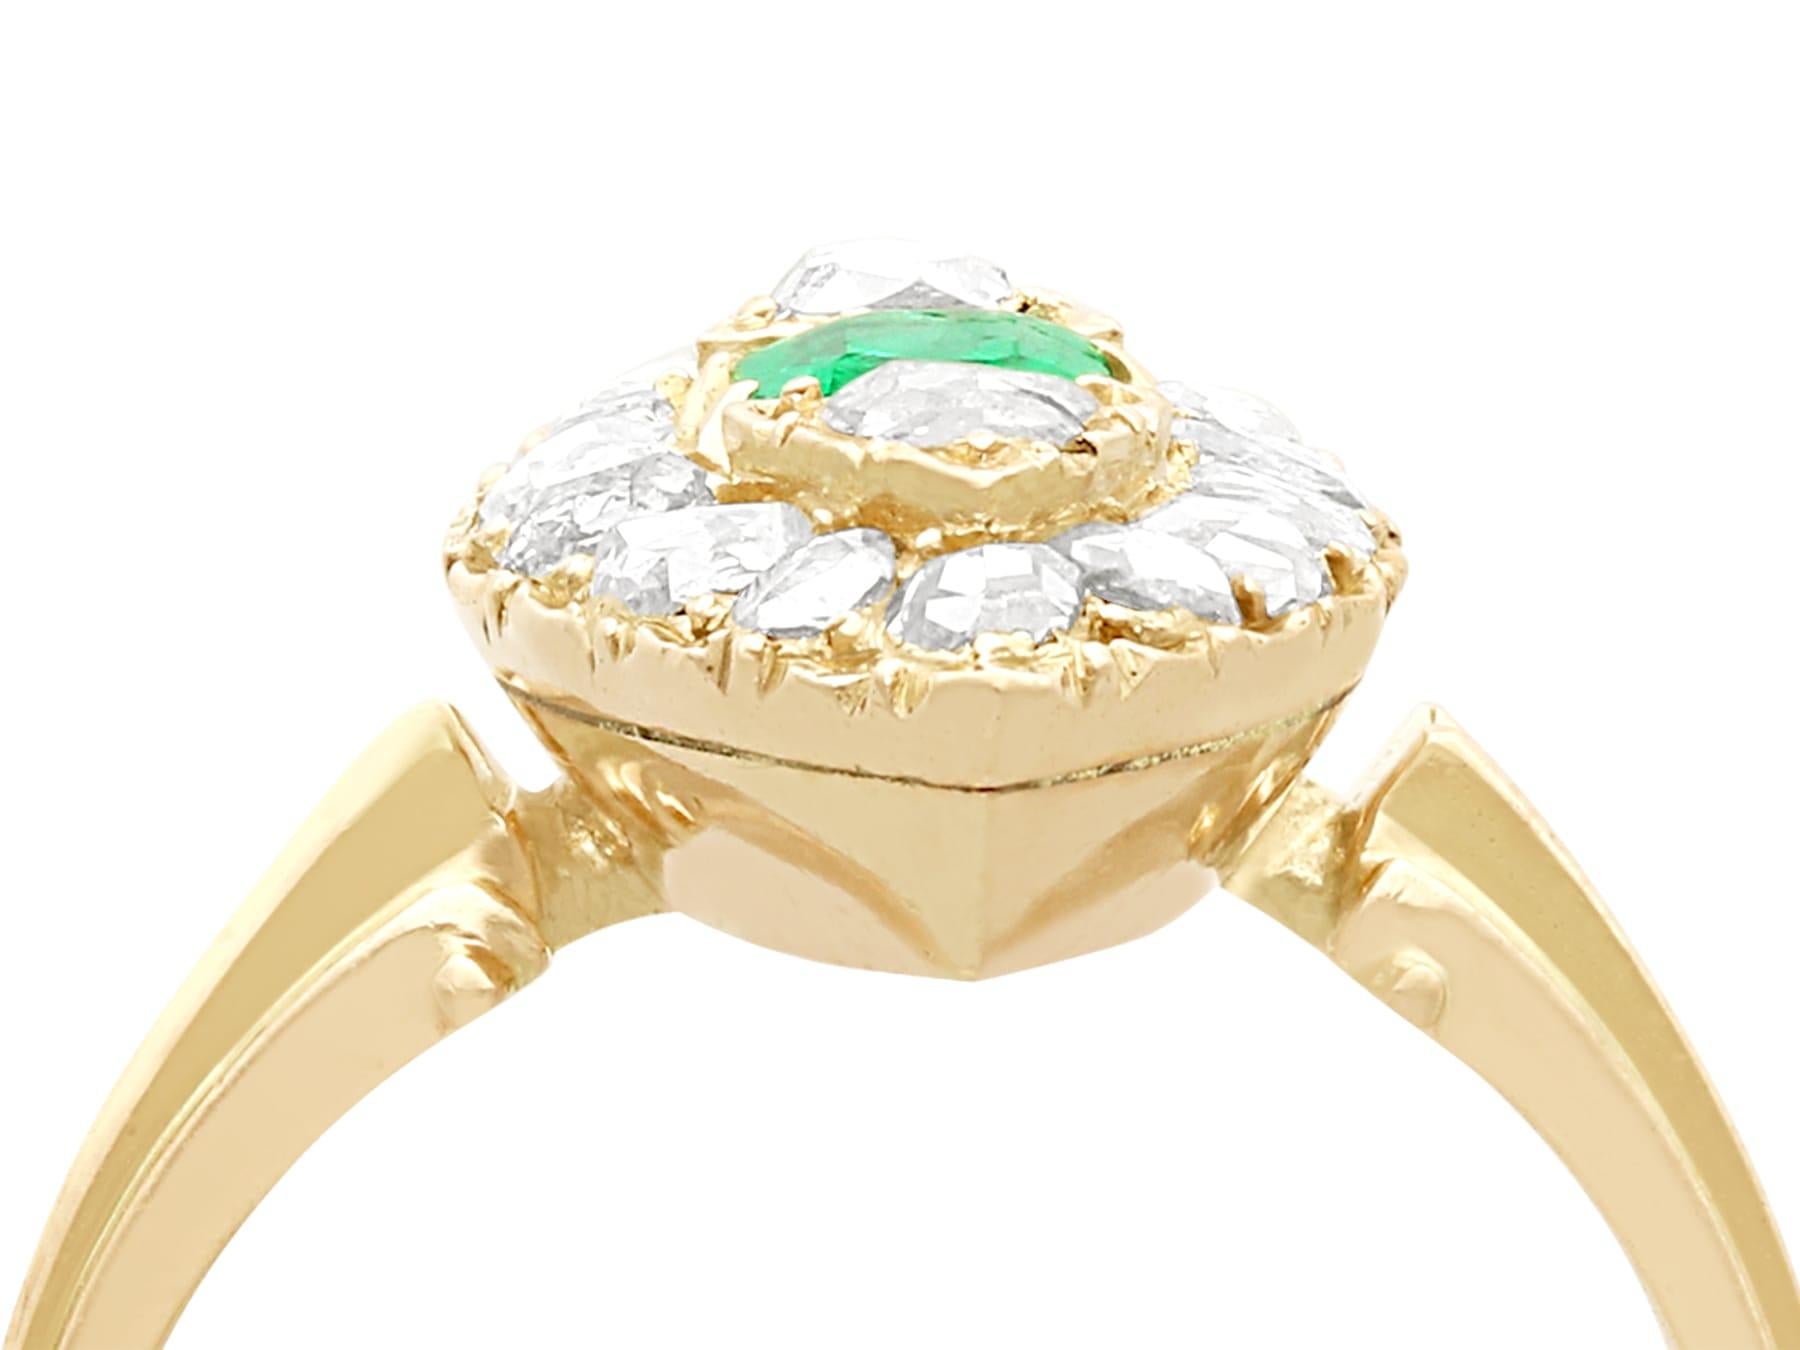 Eine außergewöhnliche antike 0,42 Karat Smaragd und 1,78 Karat Diamant, 9k Gelbgold Marquise Ring; Teil unserer vielfältigen antiken viktorianischen Schmuck Sammlungen.

Dieser außergewöhnliche, feine und beeindruckende Ring in Form eines Smaragds